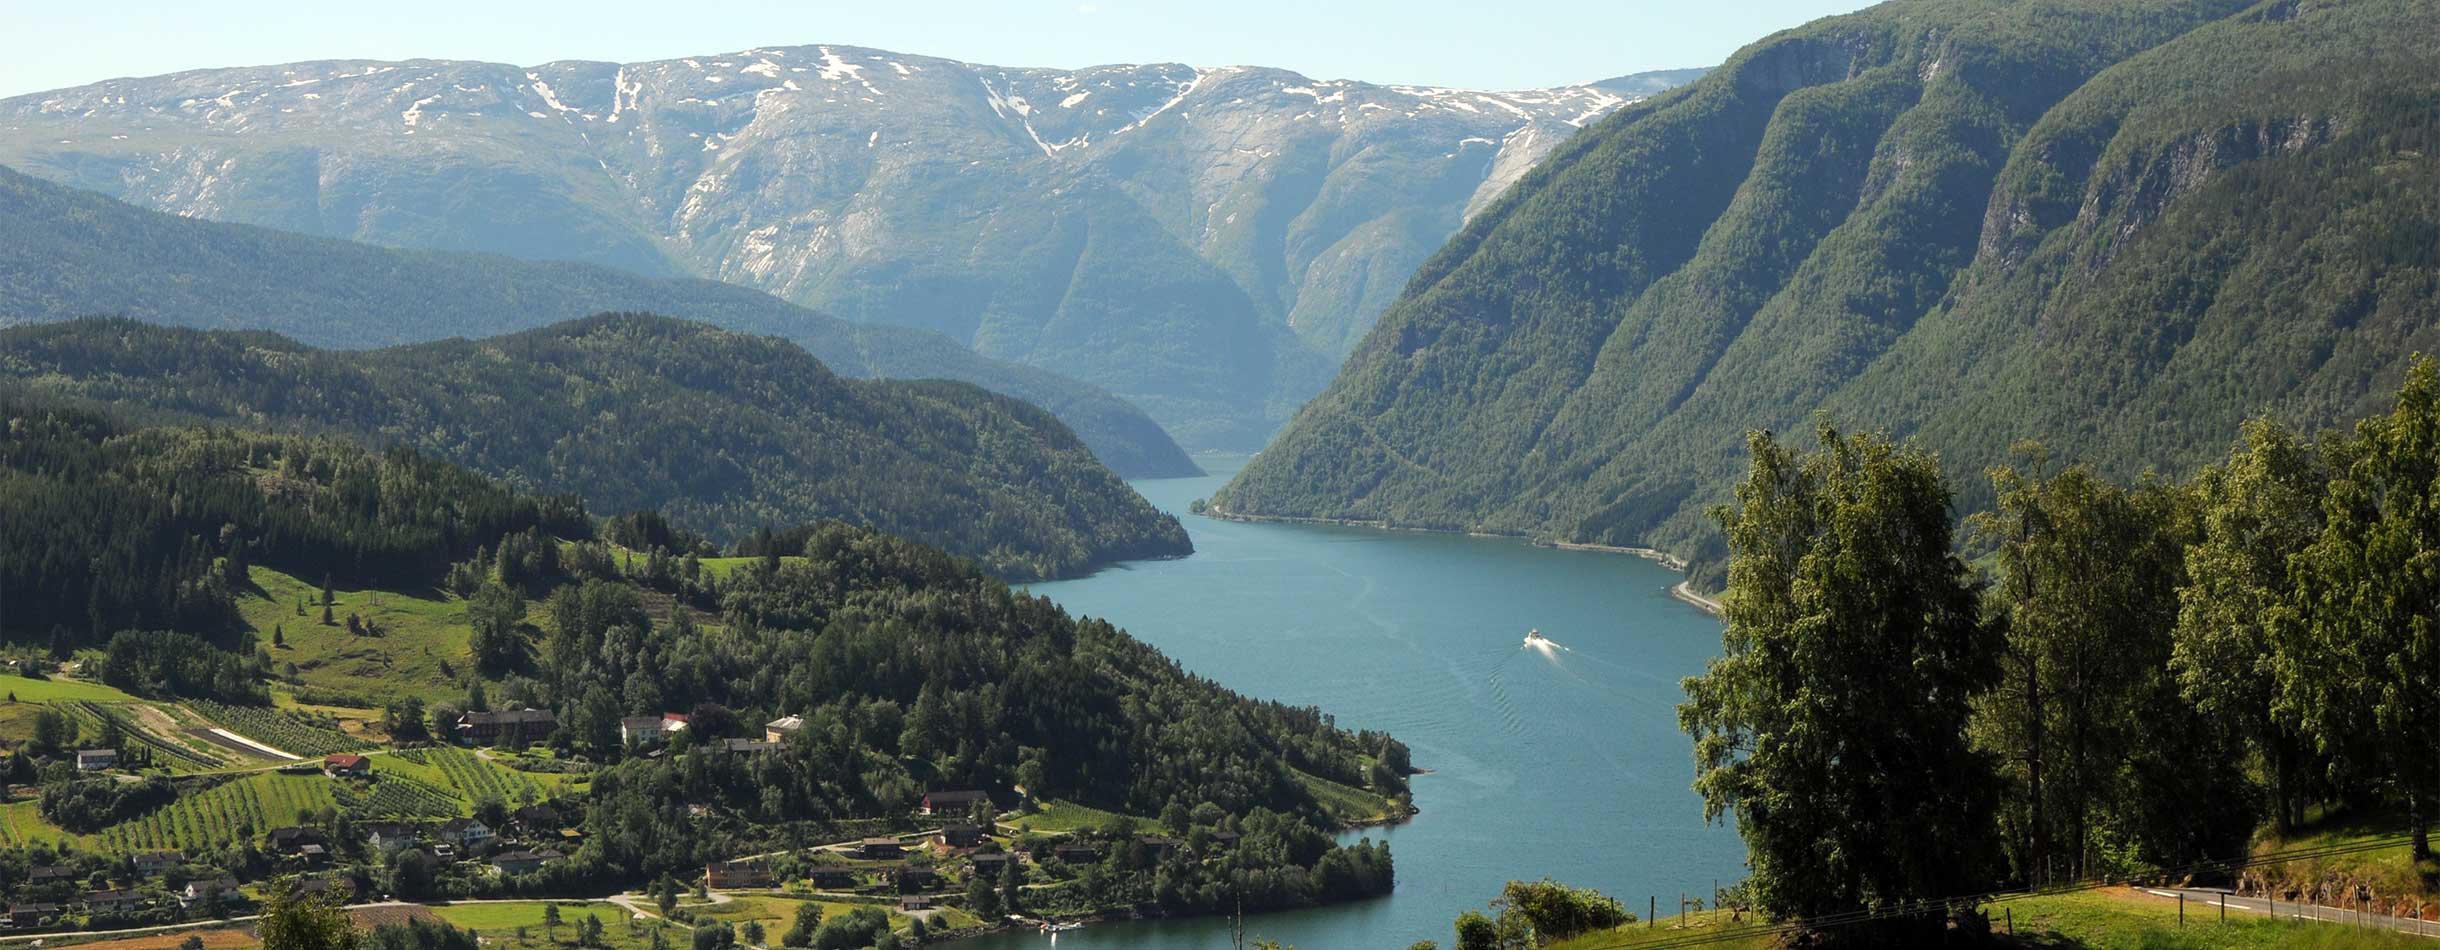 Norway Hardangerfjord Cd